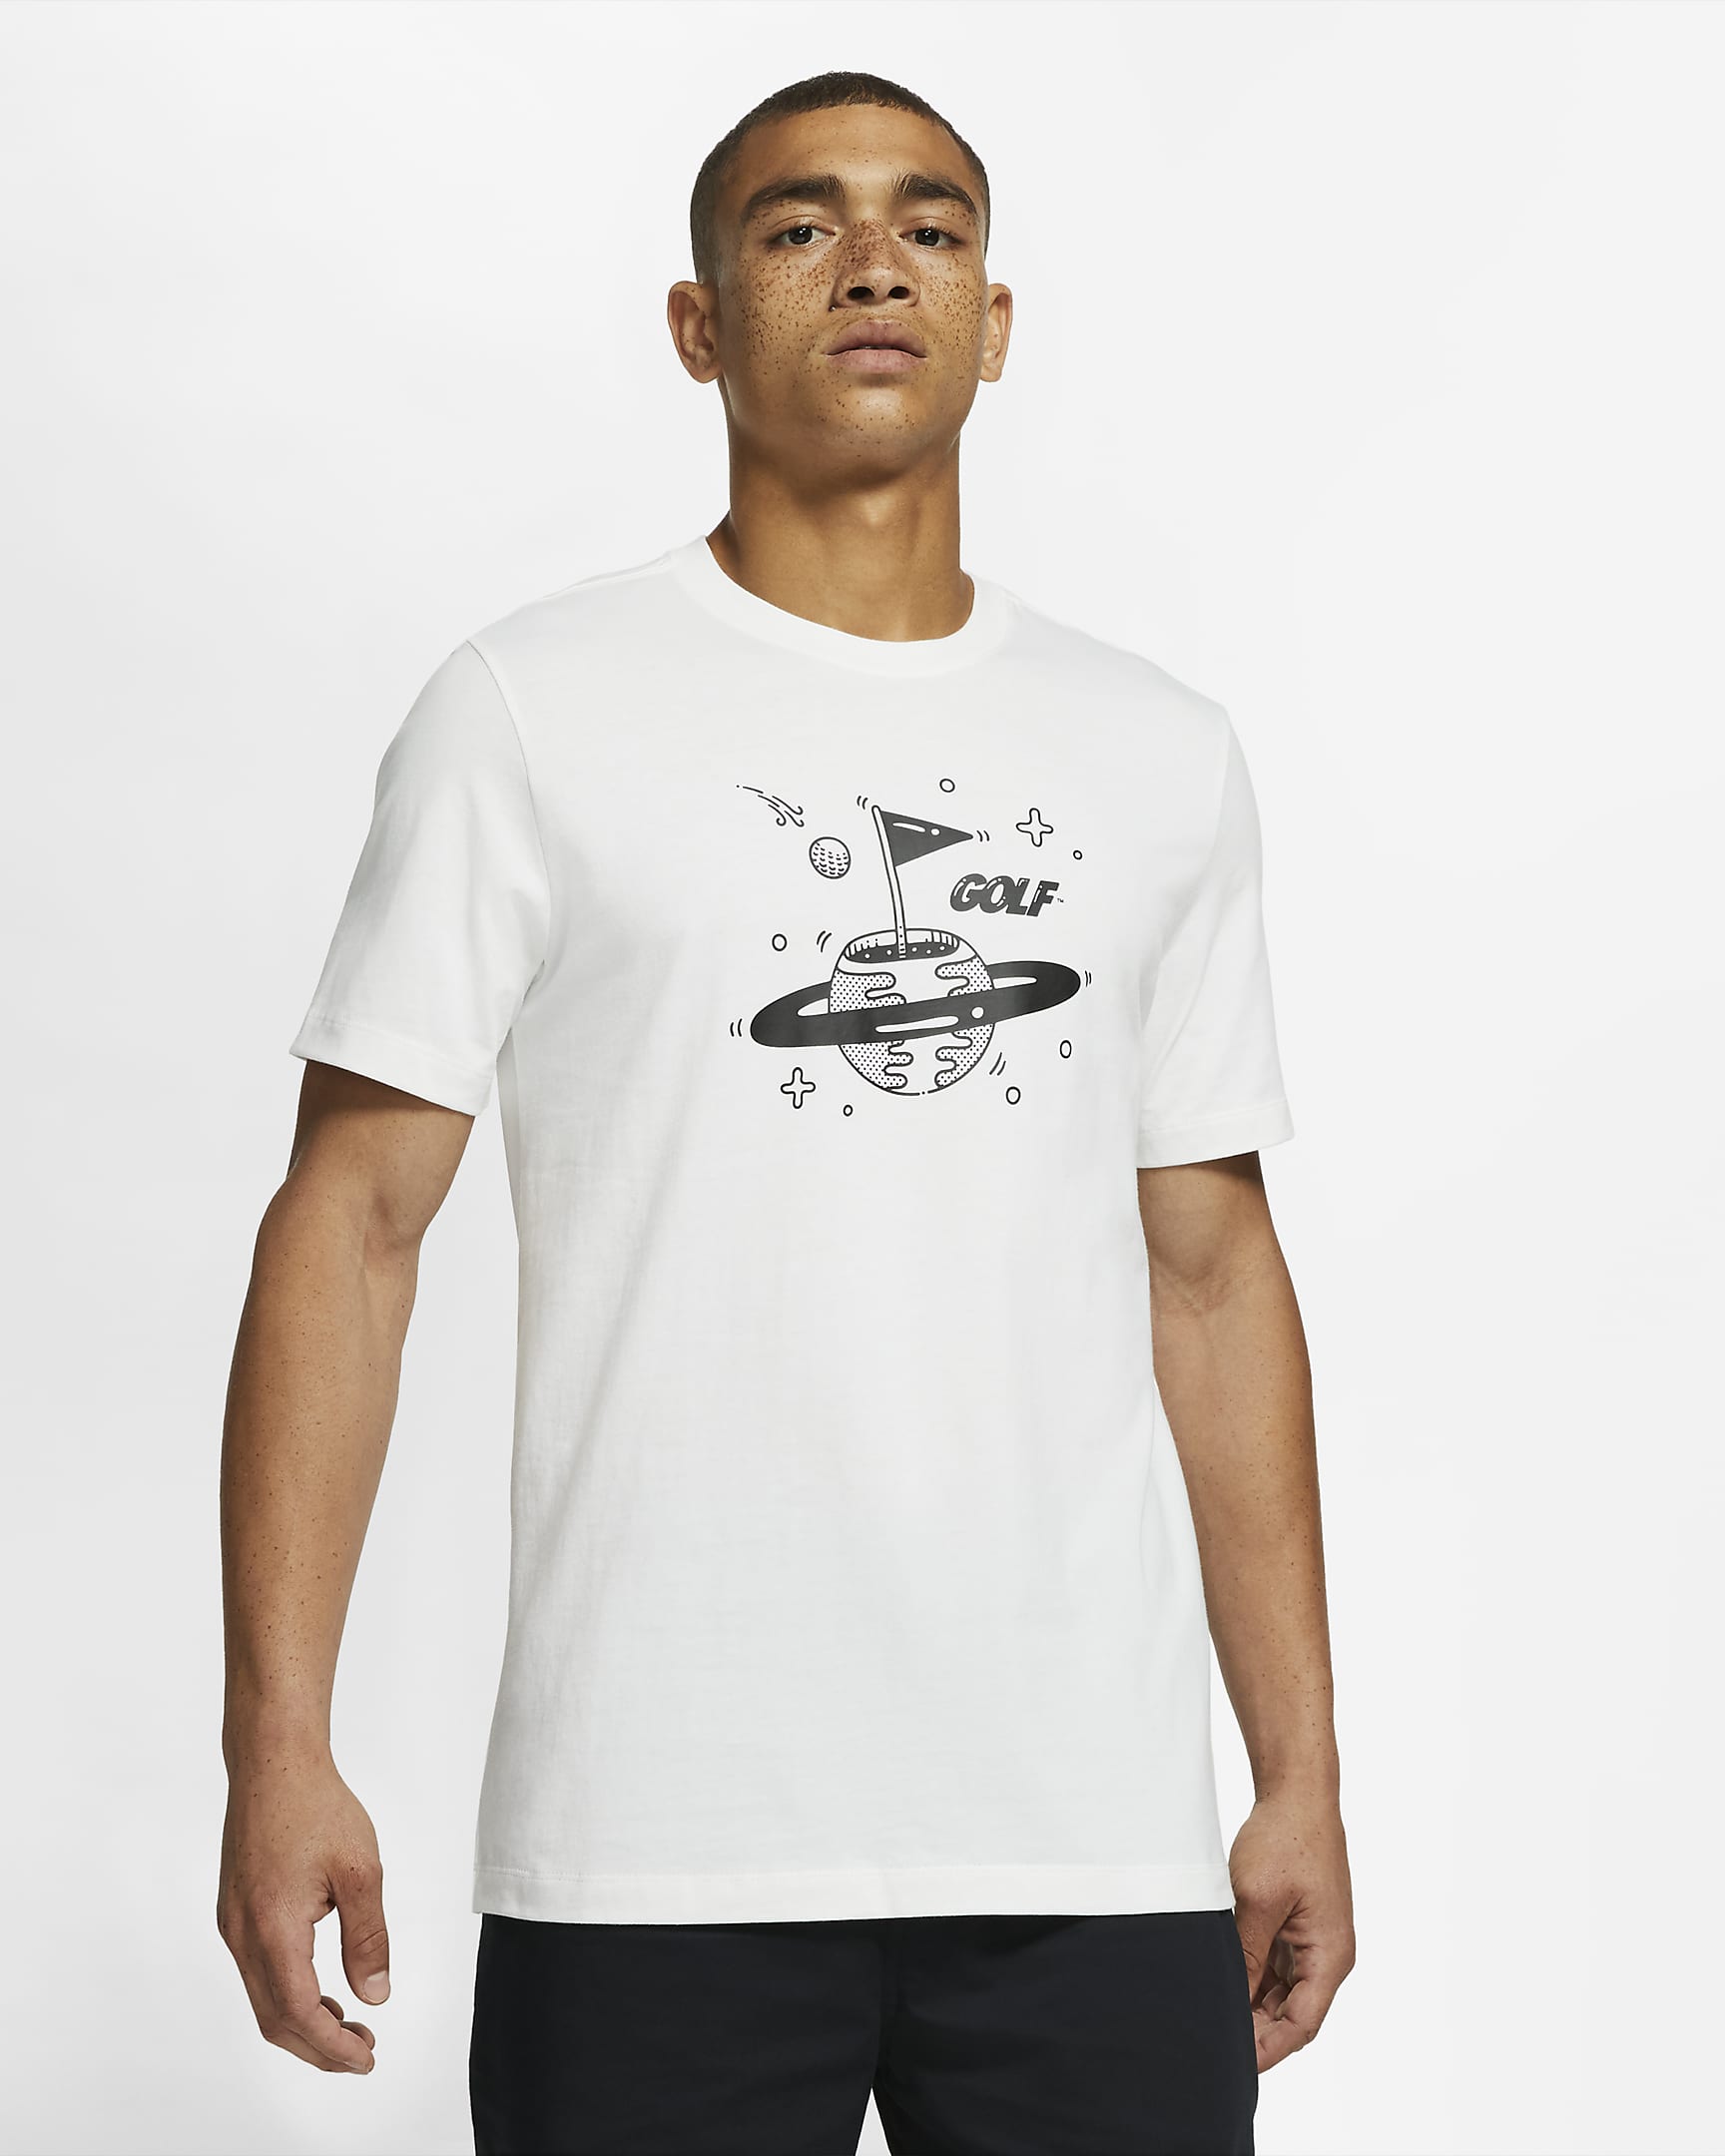 Nike Men's Golf T-Shirt. Nike IL